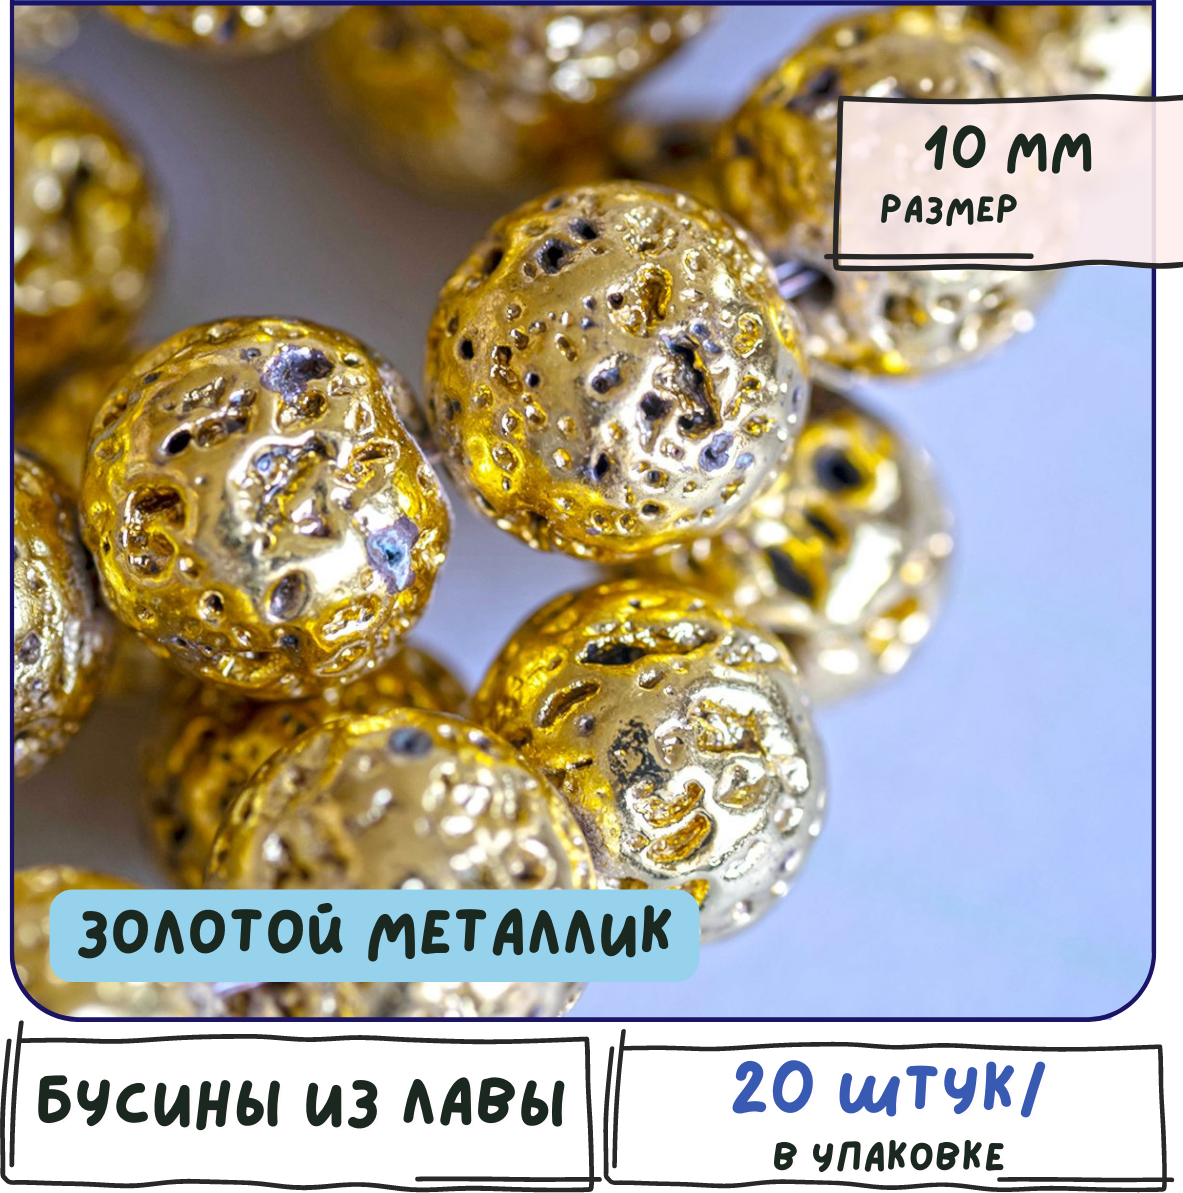 Лава Бусины натуральные 20 шт, цвет золотой металлик, размер 10 мм